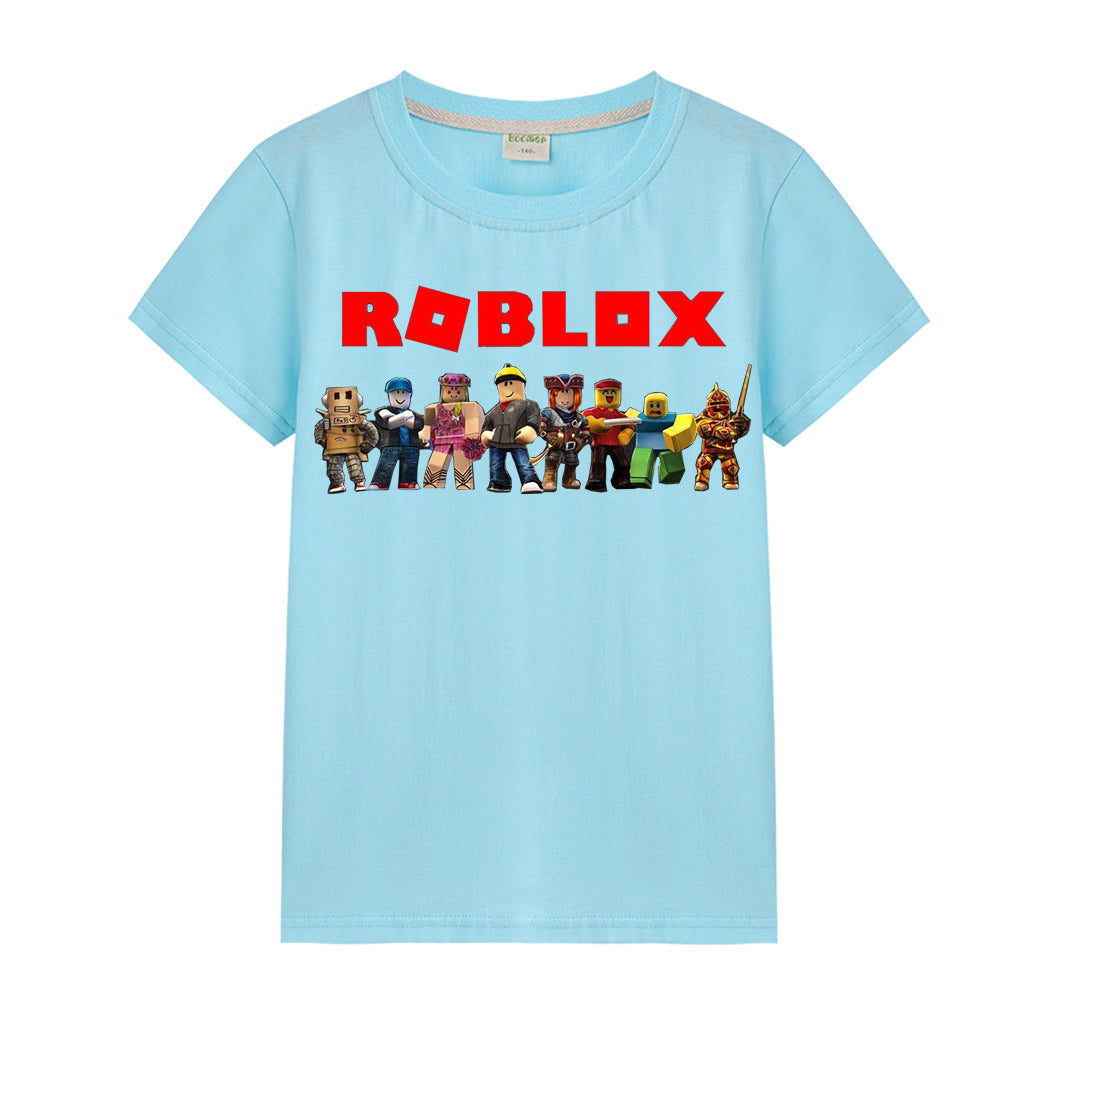 Roblox T Shirt For Boys And Girls Nfgoods - unisex little kids roblox summer t shirt nfgoods